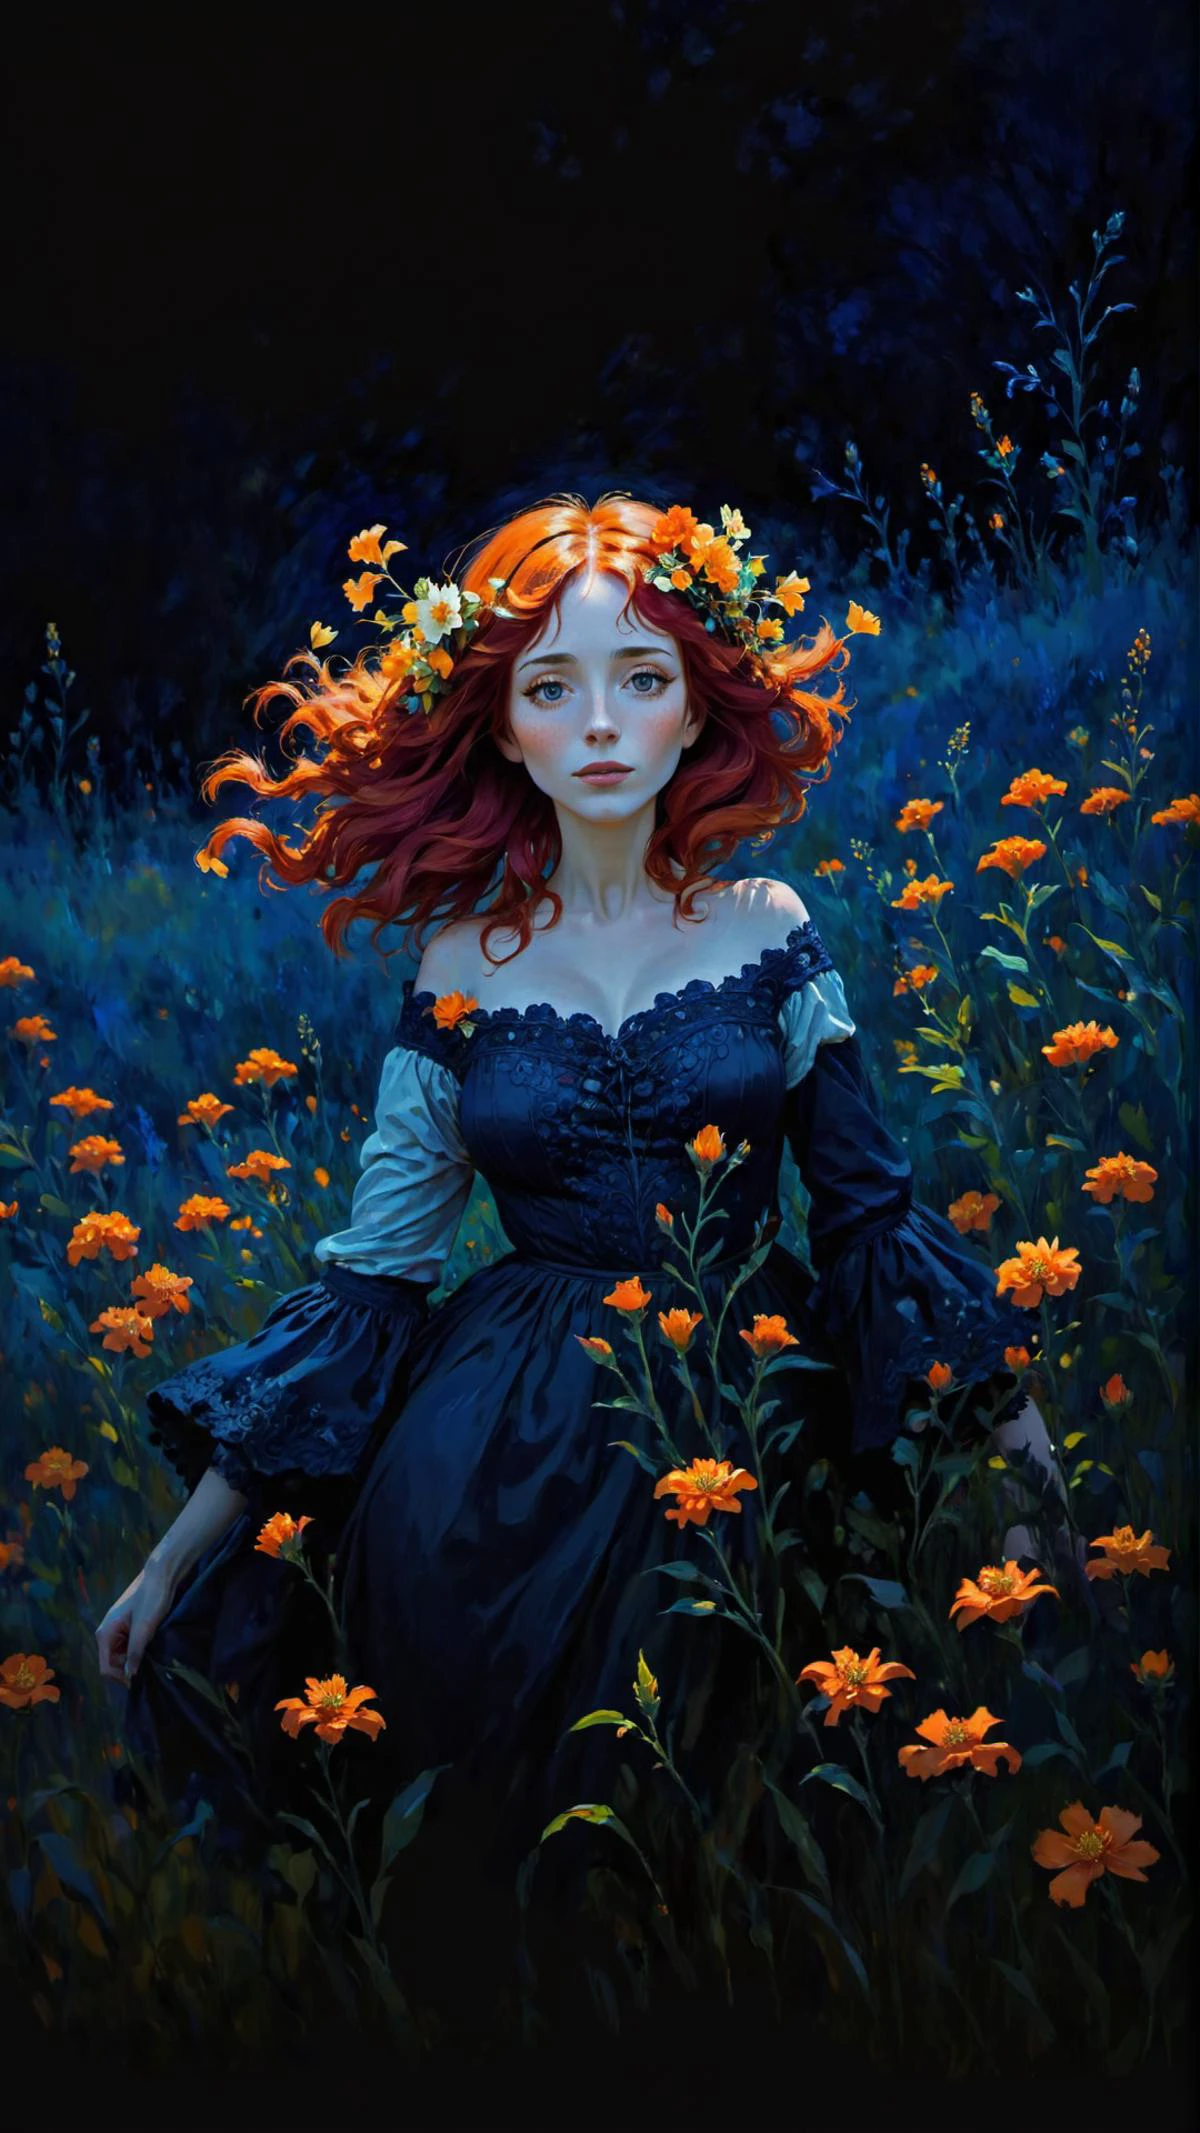 クロード・モネ風の印象派絵画, 赤い髪と髪にオレンジ色の花をつけた女性, オレンジ色の花畑で, 濃い青色の背景, 鮮やかな色彩, ファンタジーアート,